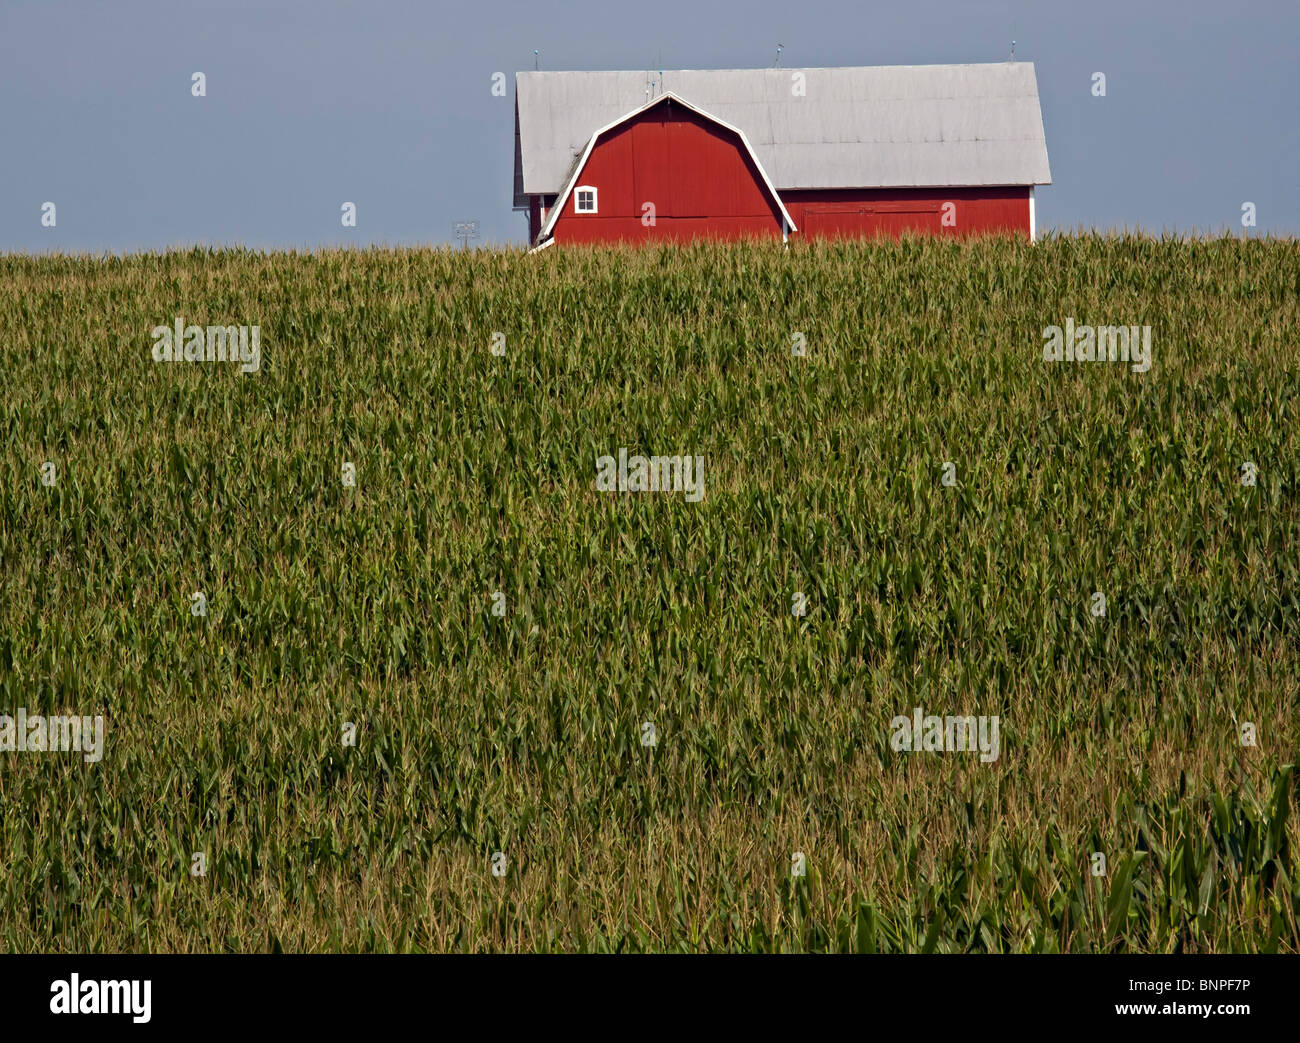 Albion, Michigan - A barn and corn field in rural Michigan. Stock Photo